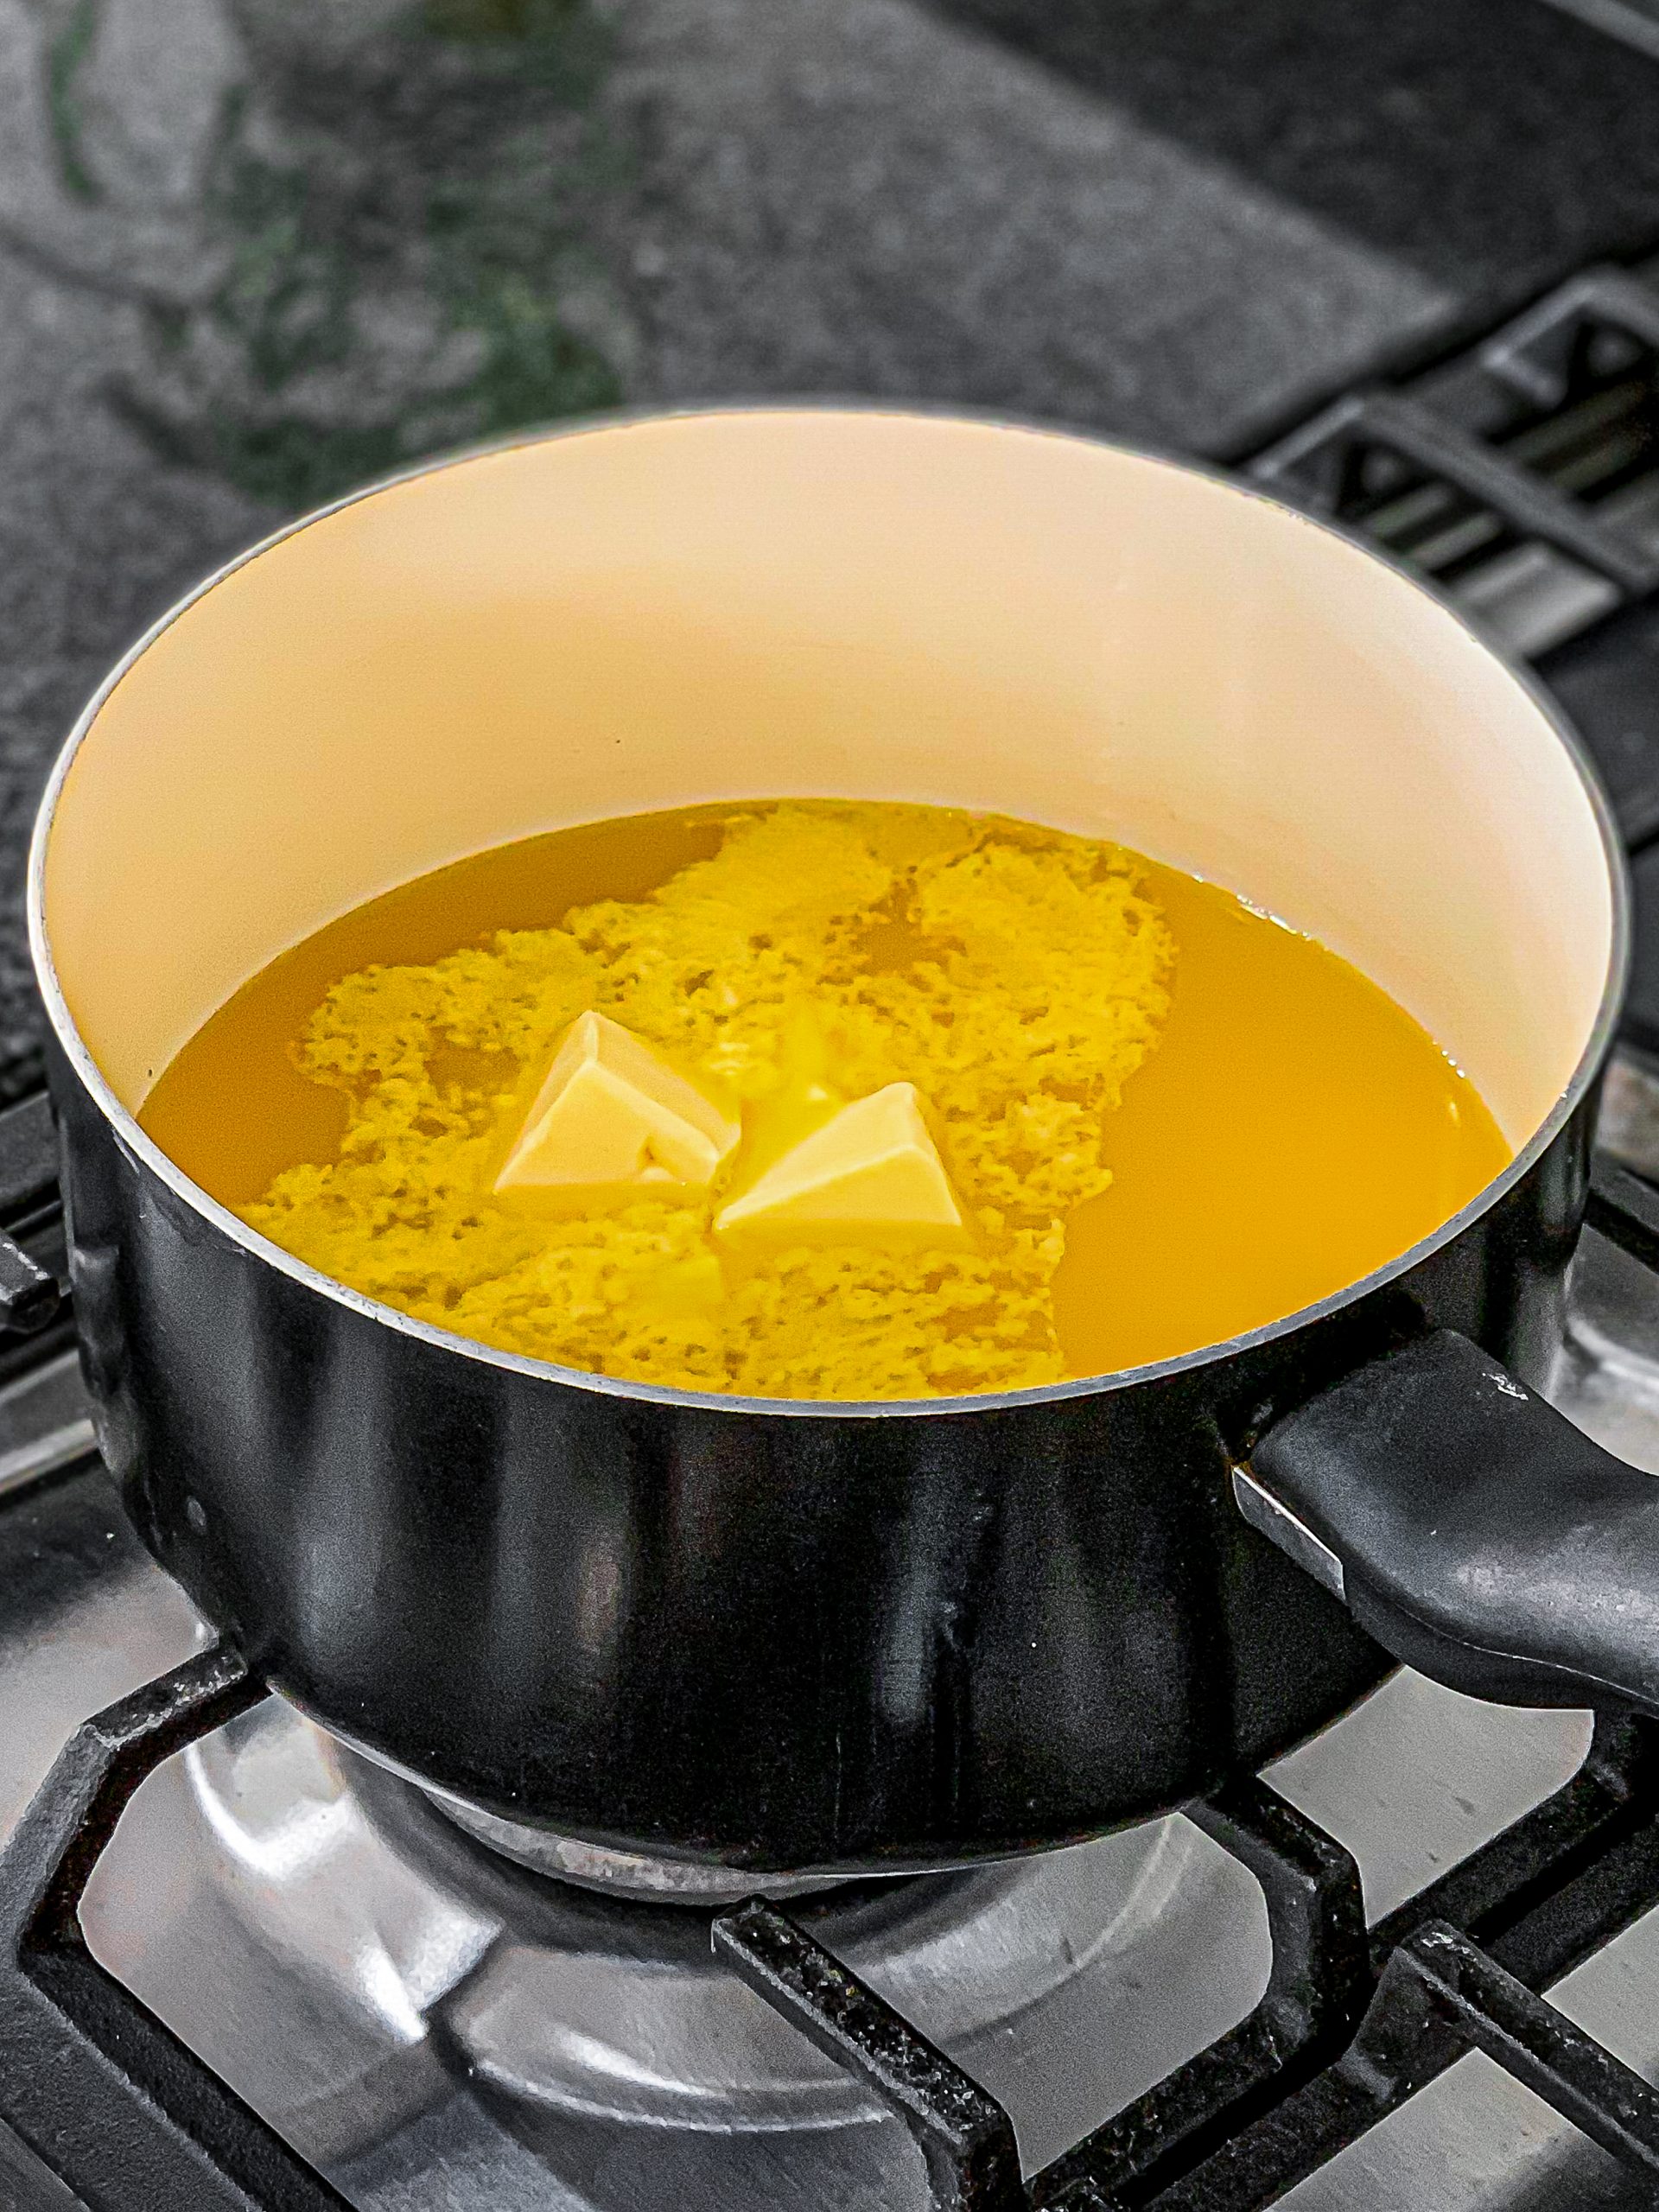 In a medium saucepan, add butter, orange juice, and sugar.